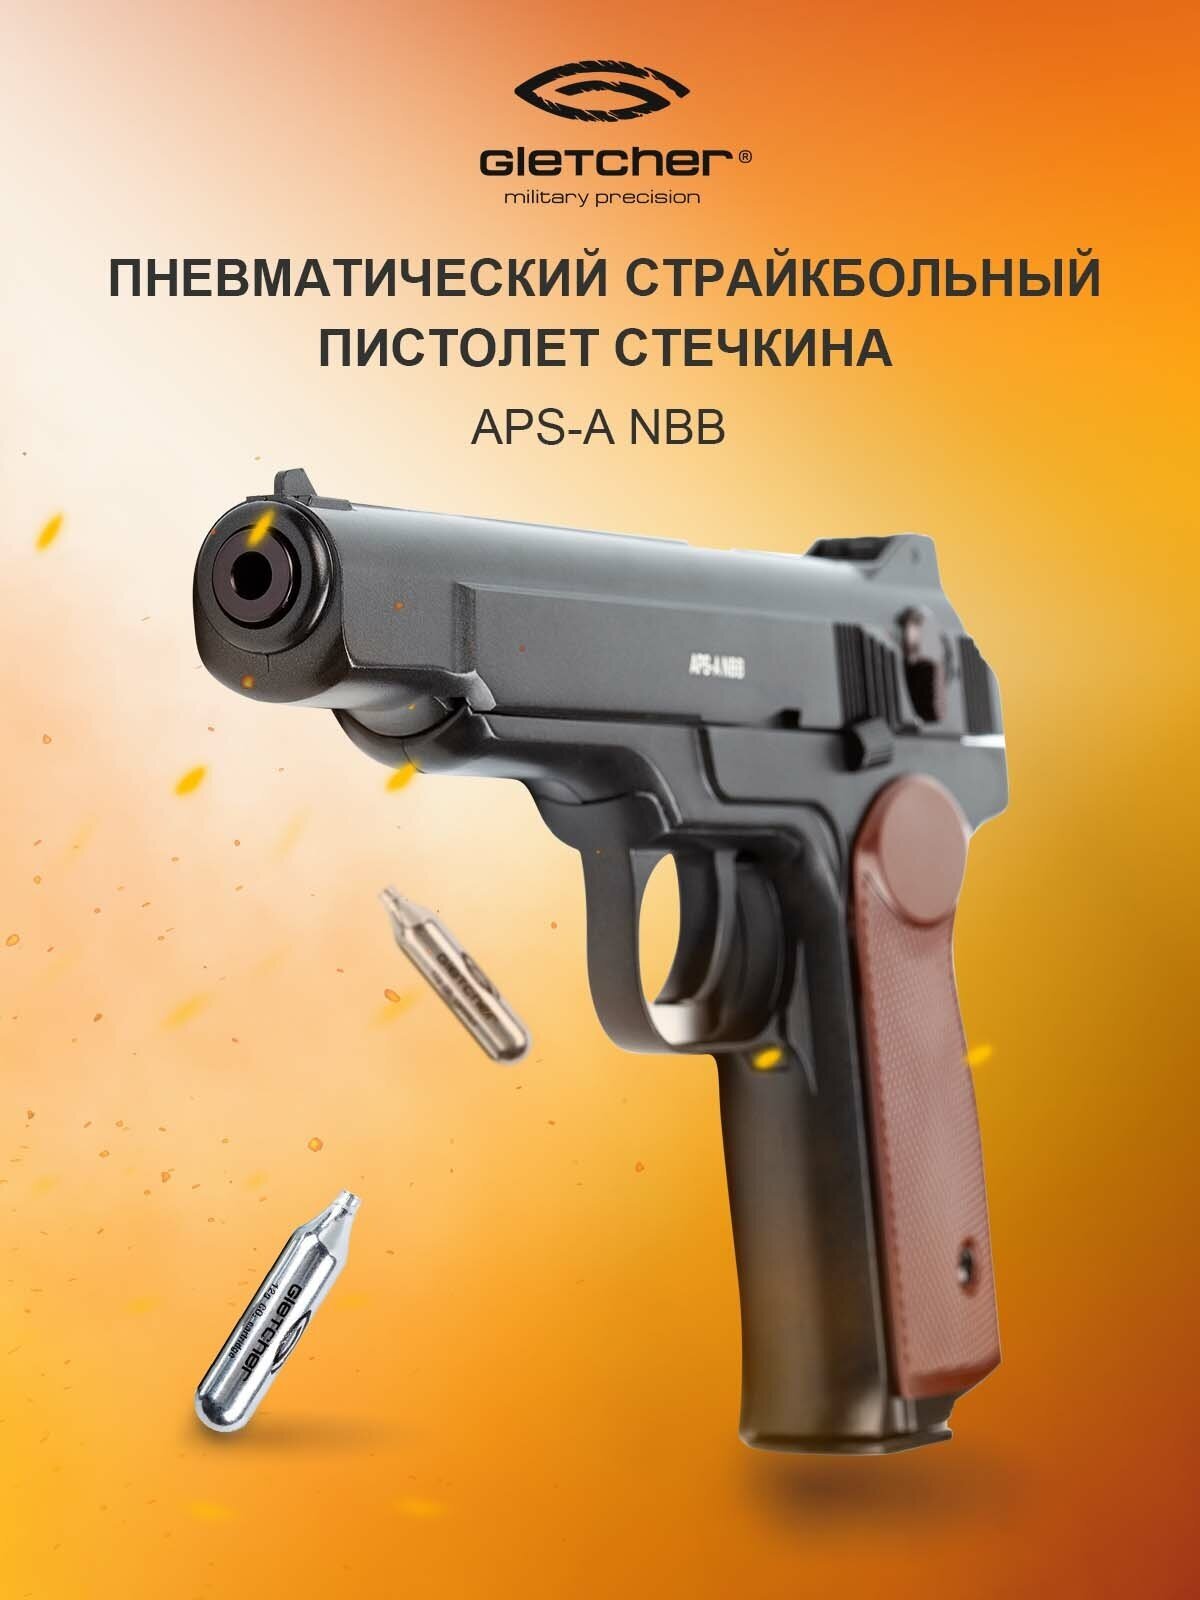 Пистолет пневматический Gletcher APS-A NBB 6 mm Soft Air, (АПС, Стечкин)